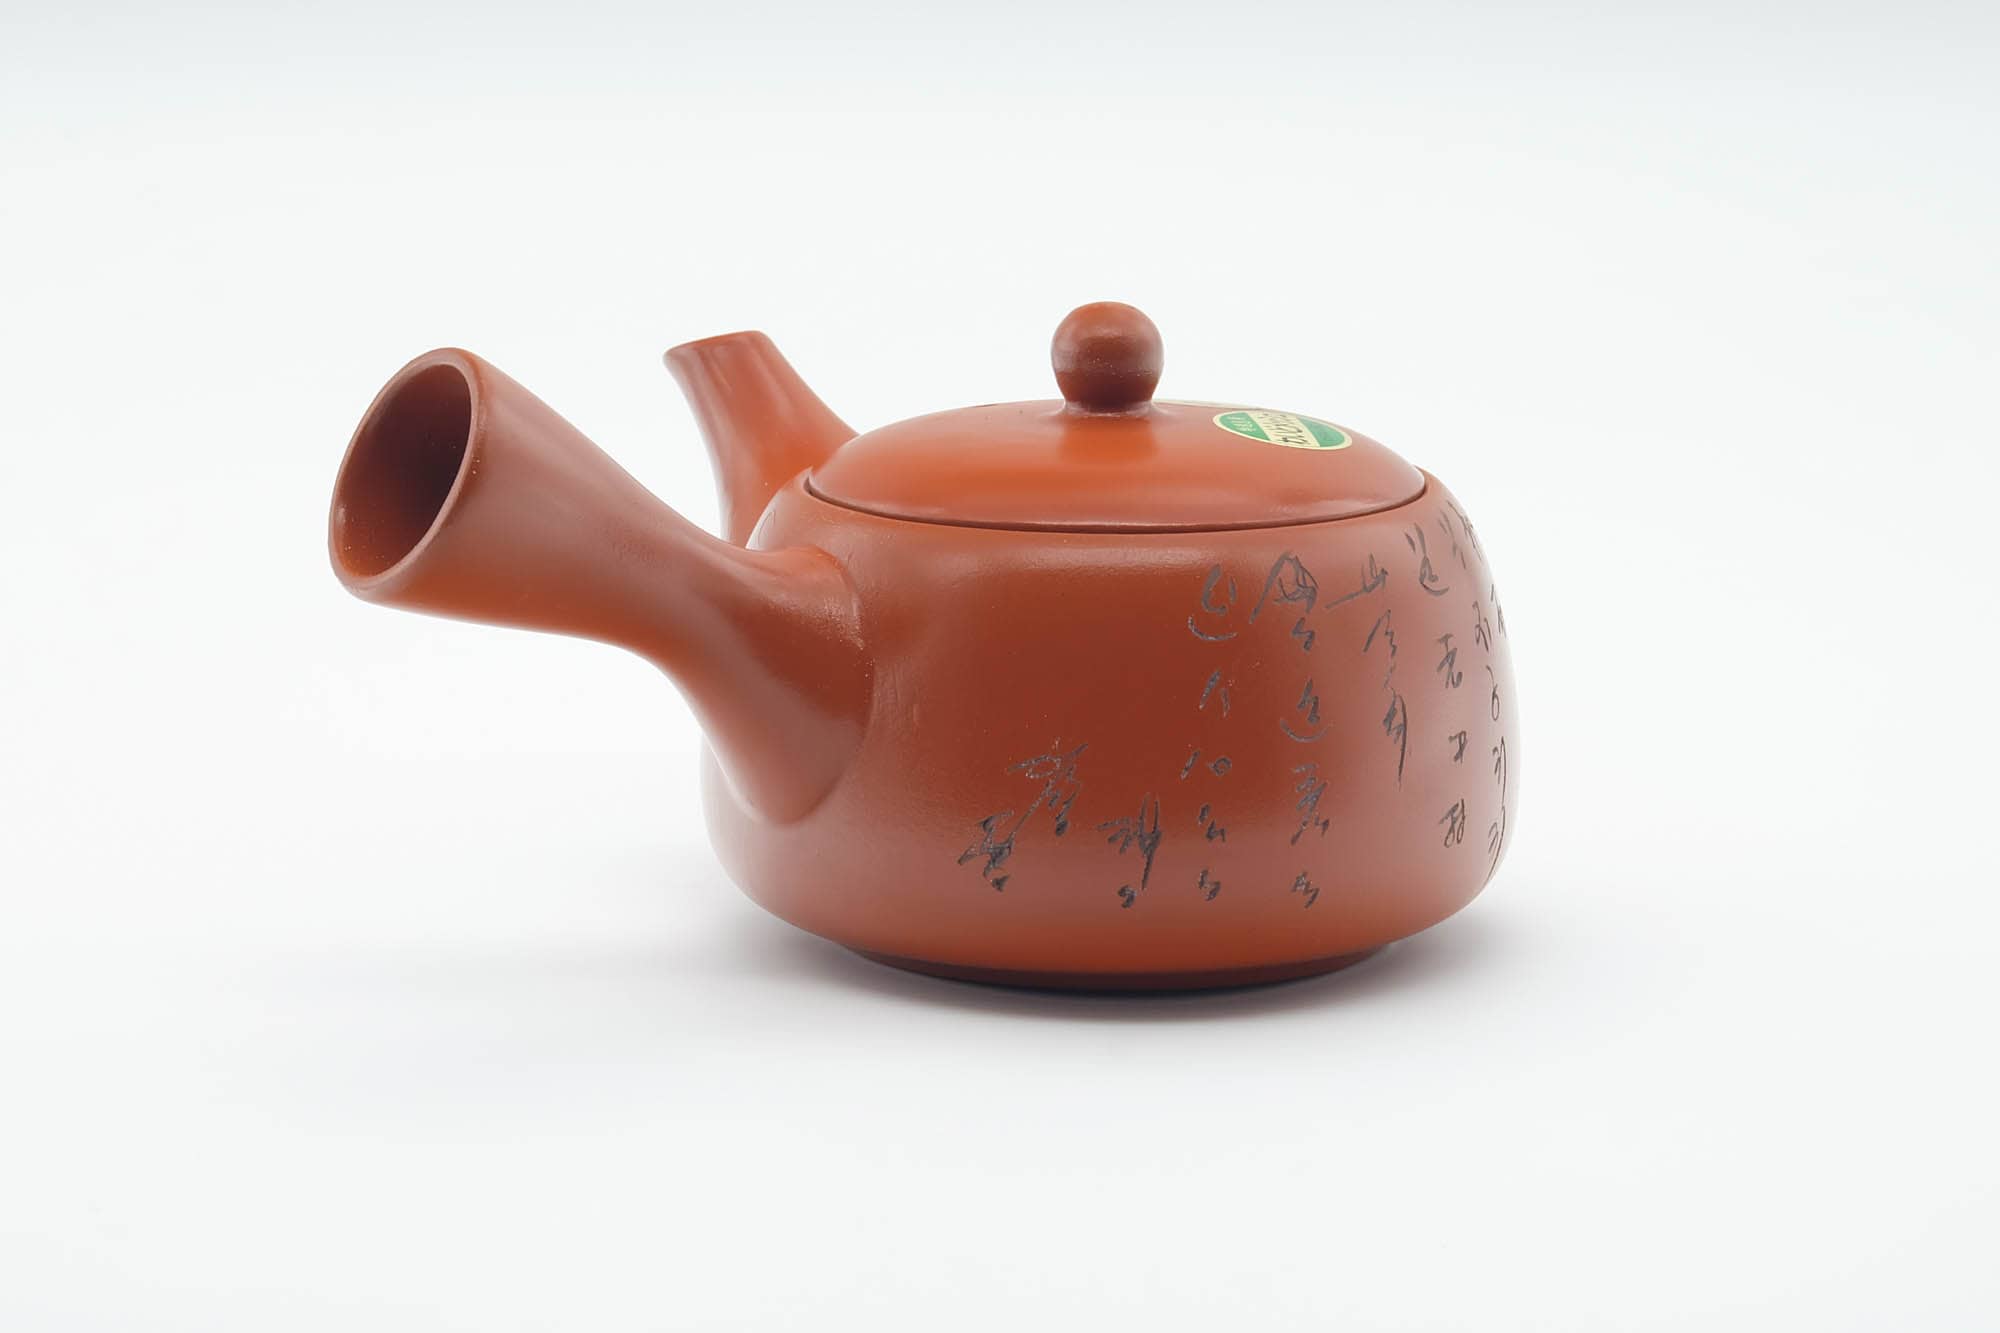 Japanese Kyusu - Calligraphy Engraved Red Shudei Tokoname-yaki Mesh Filter Teapot - 350ml